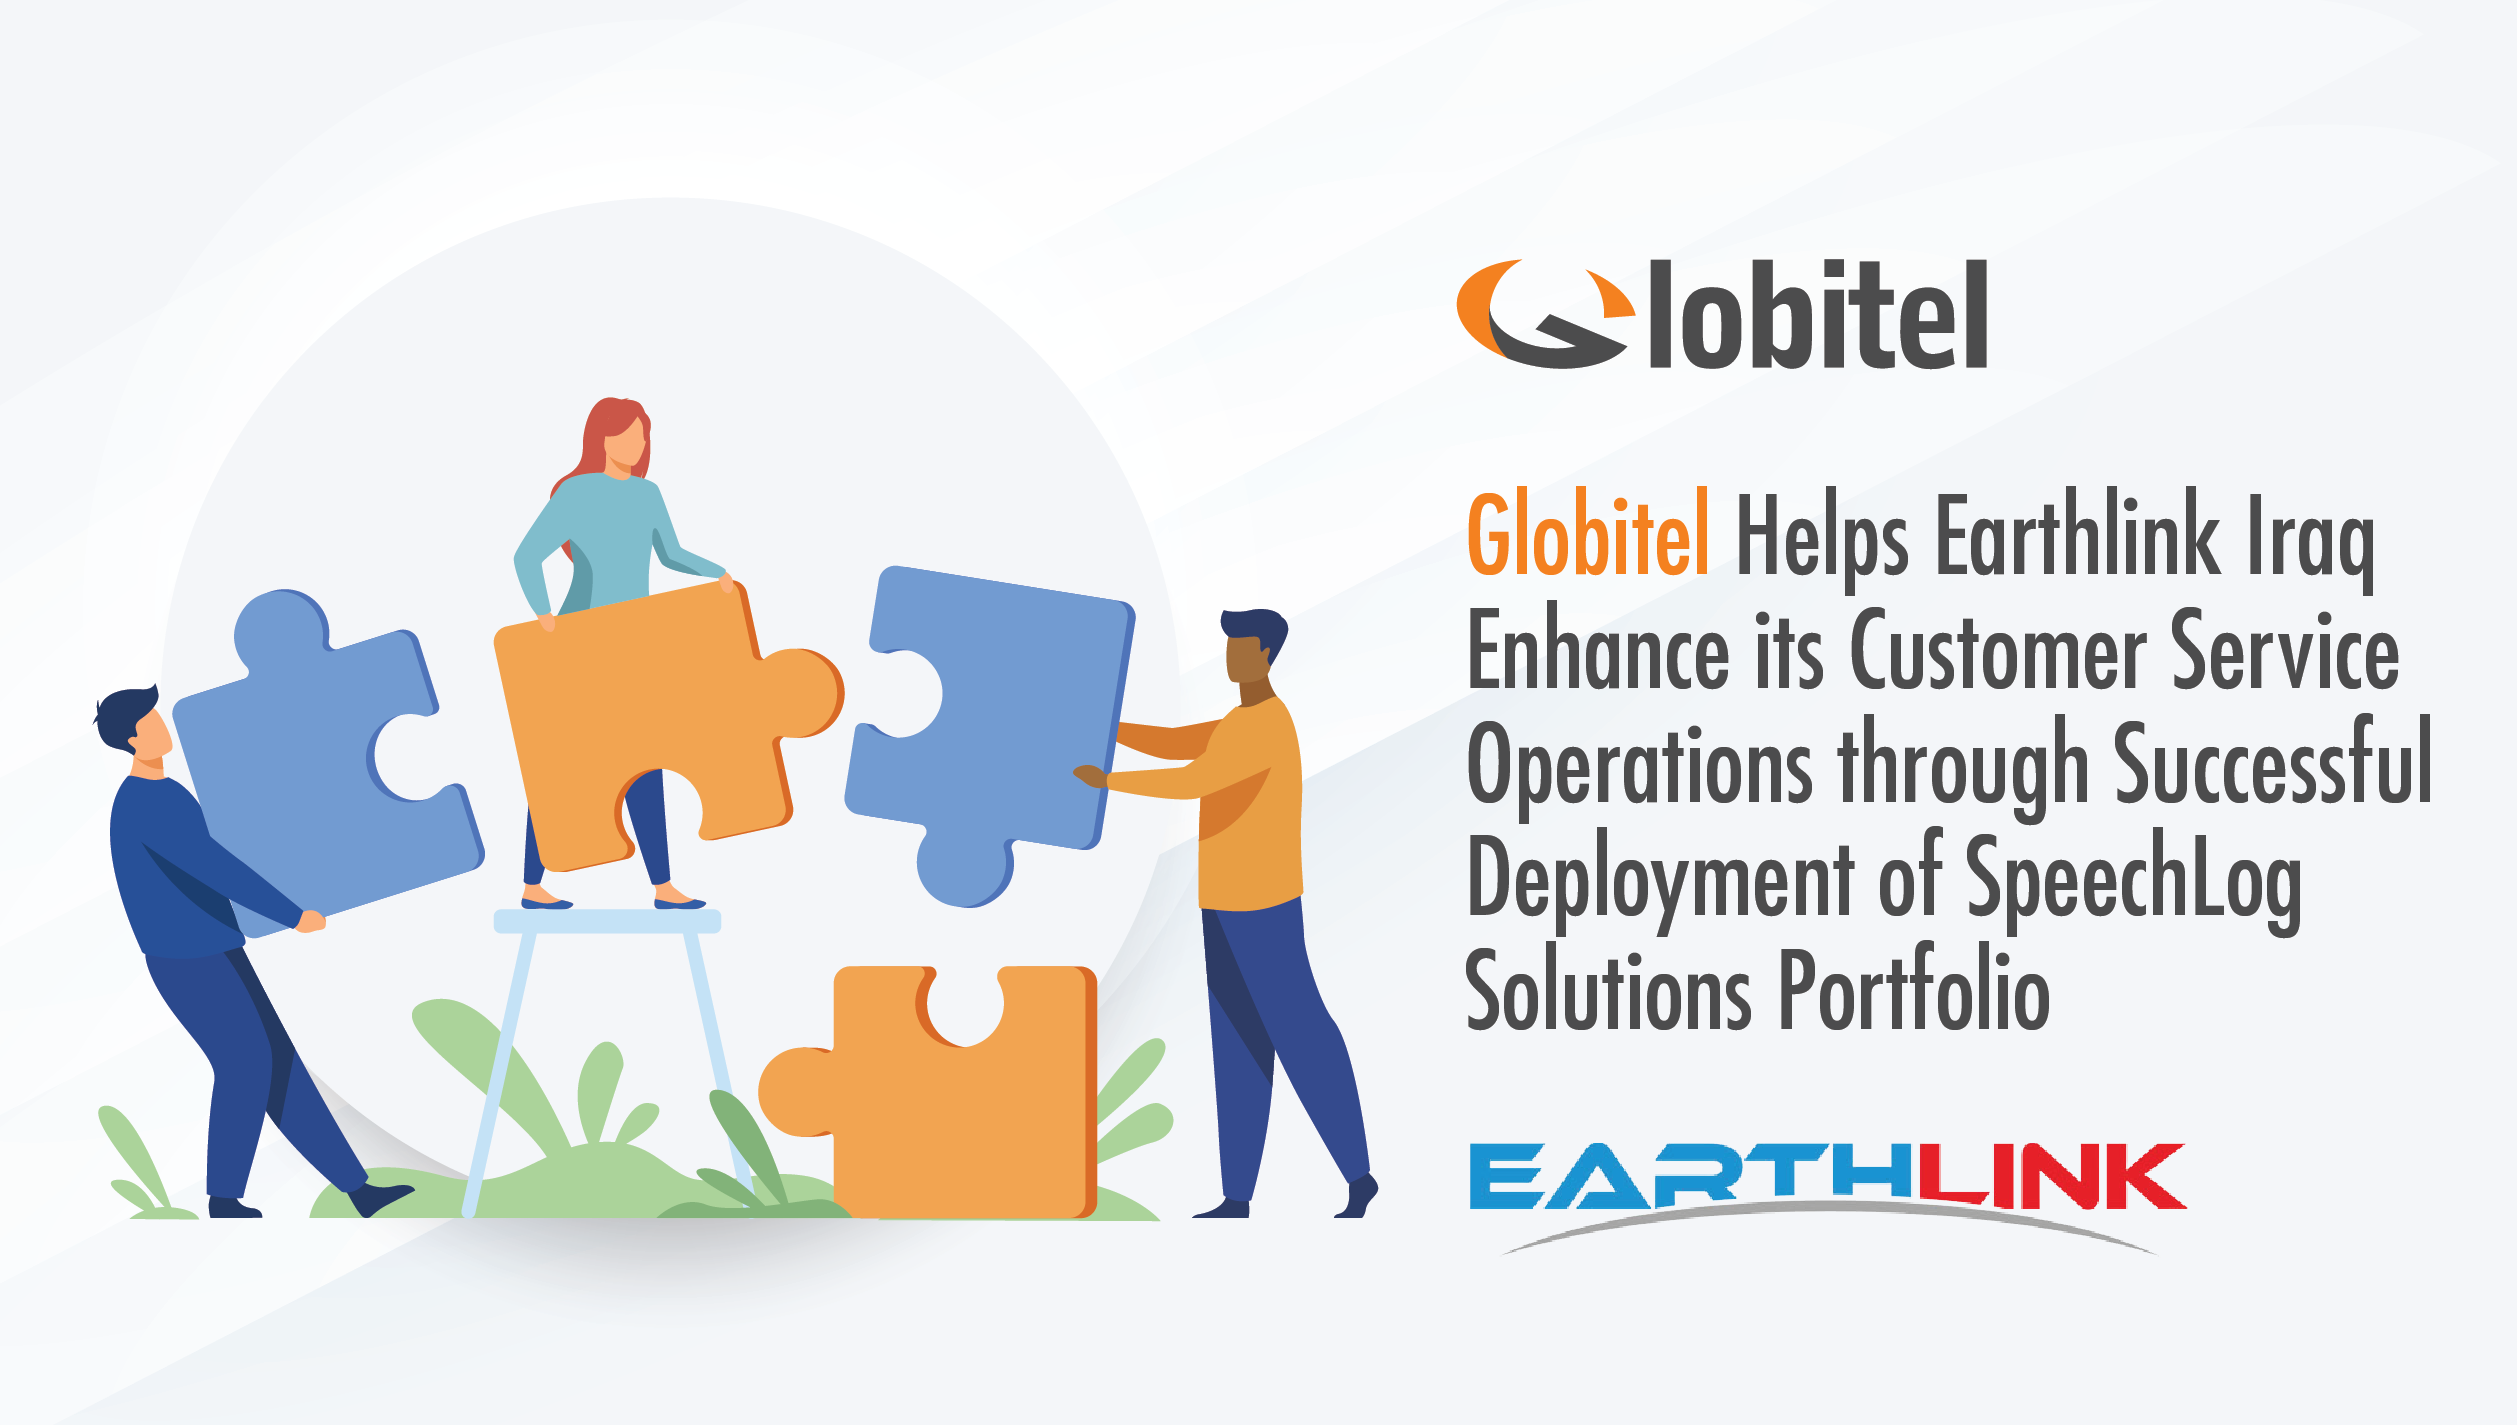 بدعم من Globitel نجحت شركة Earthlink في إطلاق مجموعة حلول Speechlog بهدف تعزيز عملياتها المتعلقة بخدمة الزبائن